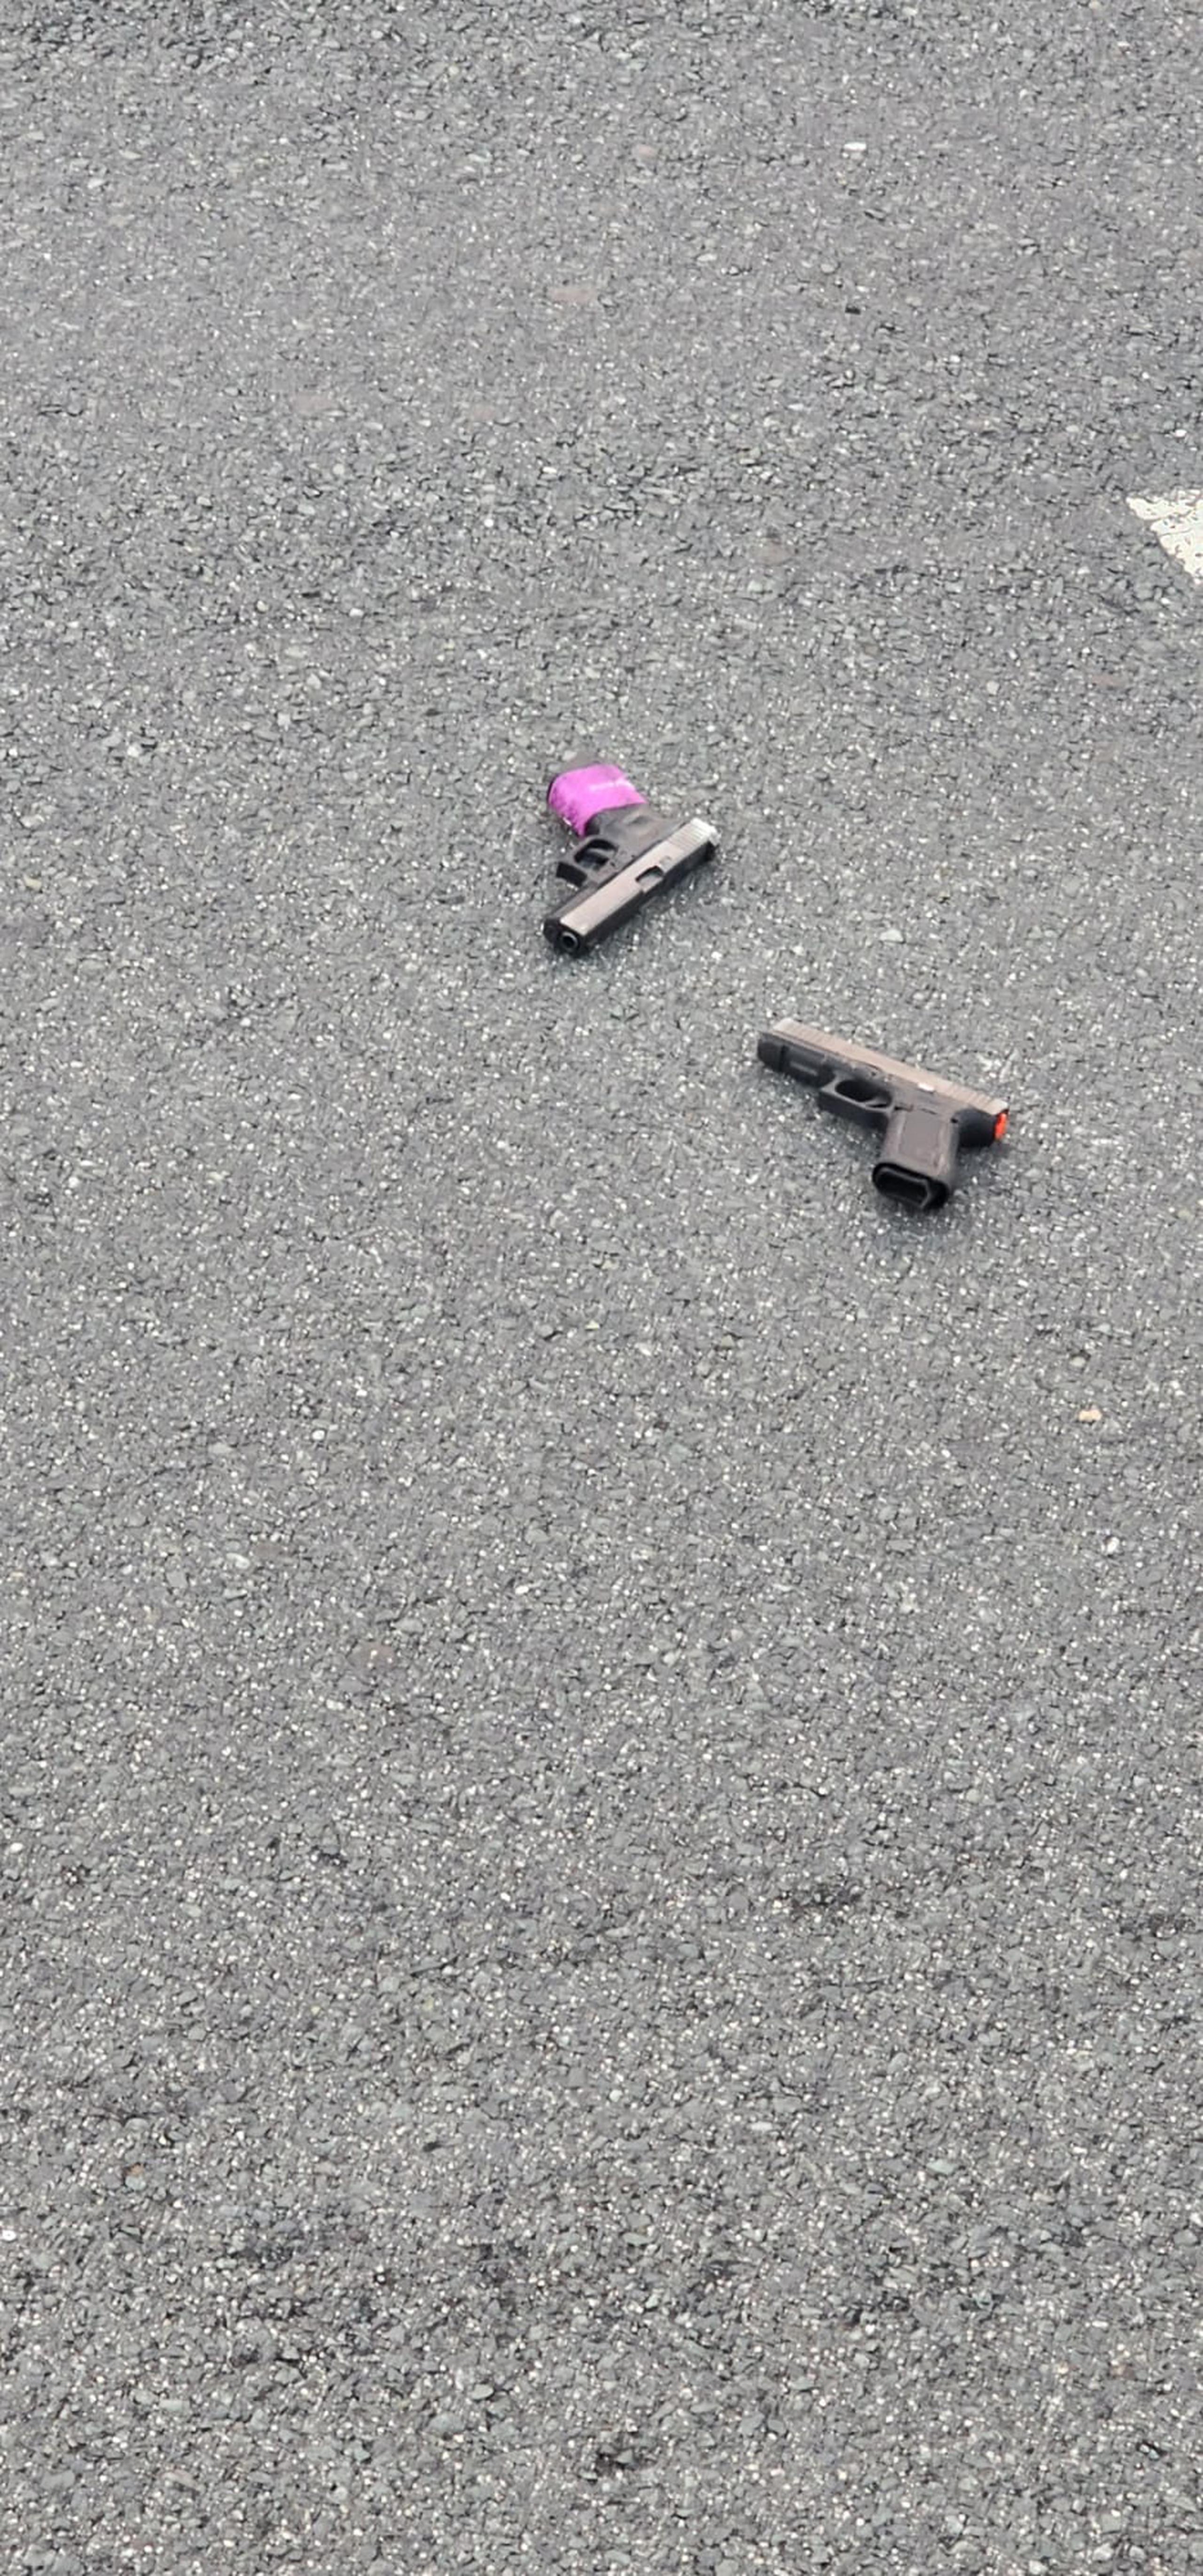 Dos pistolas Glock fueron recuperadas en la escena donde se accidentaron dos motociclistas que escapaban de la Policía tras un escalamiento en un concesionario.